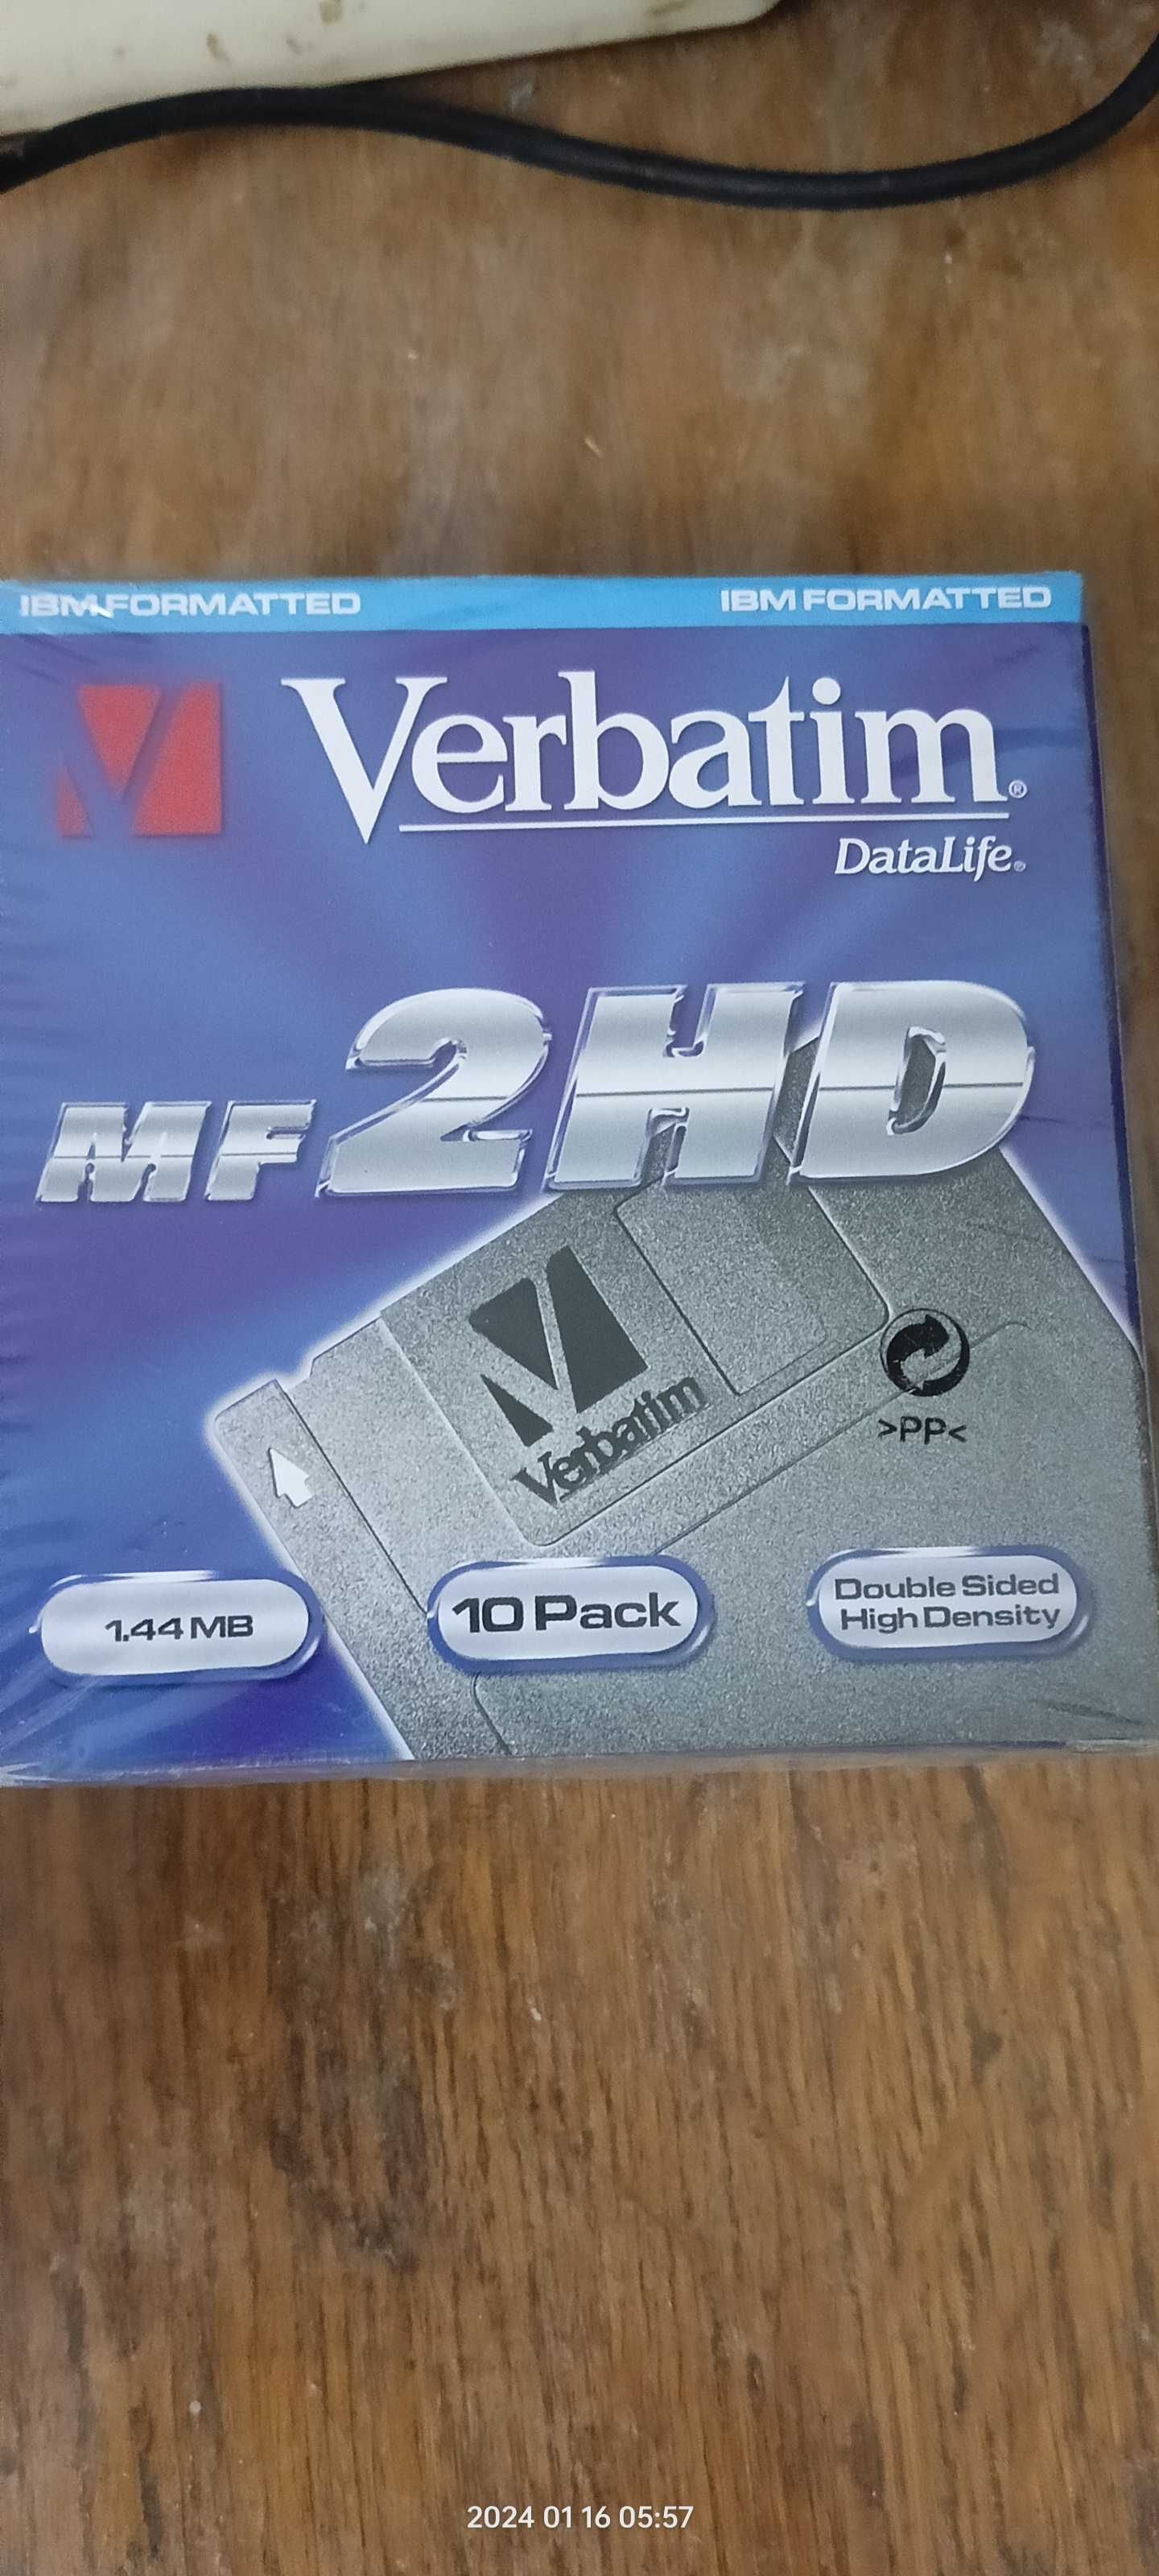 Floppy(fdd) CD дисковод кардридер и agp карта